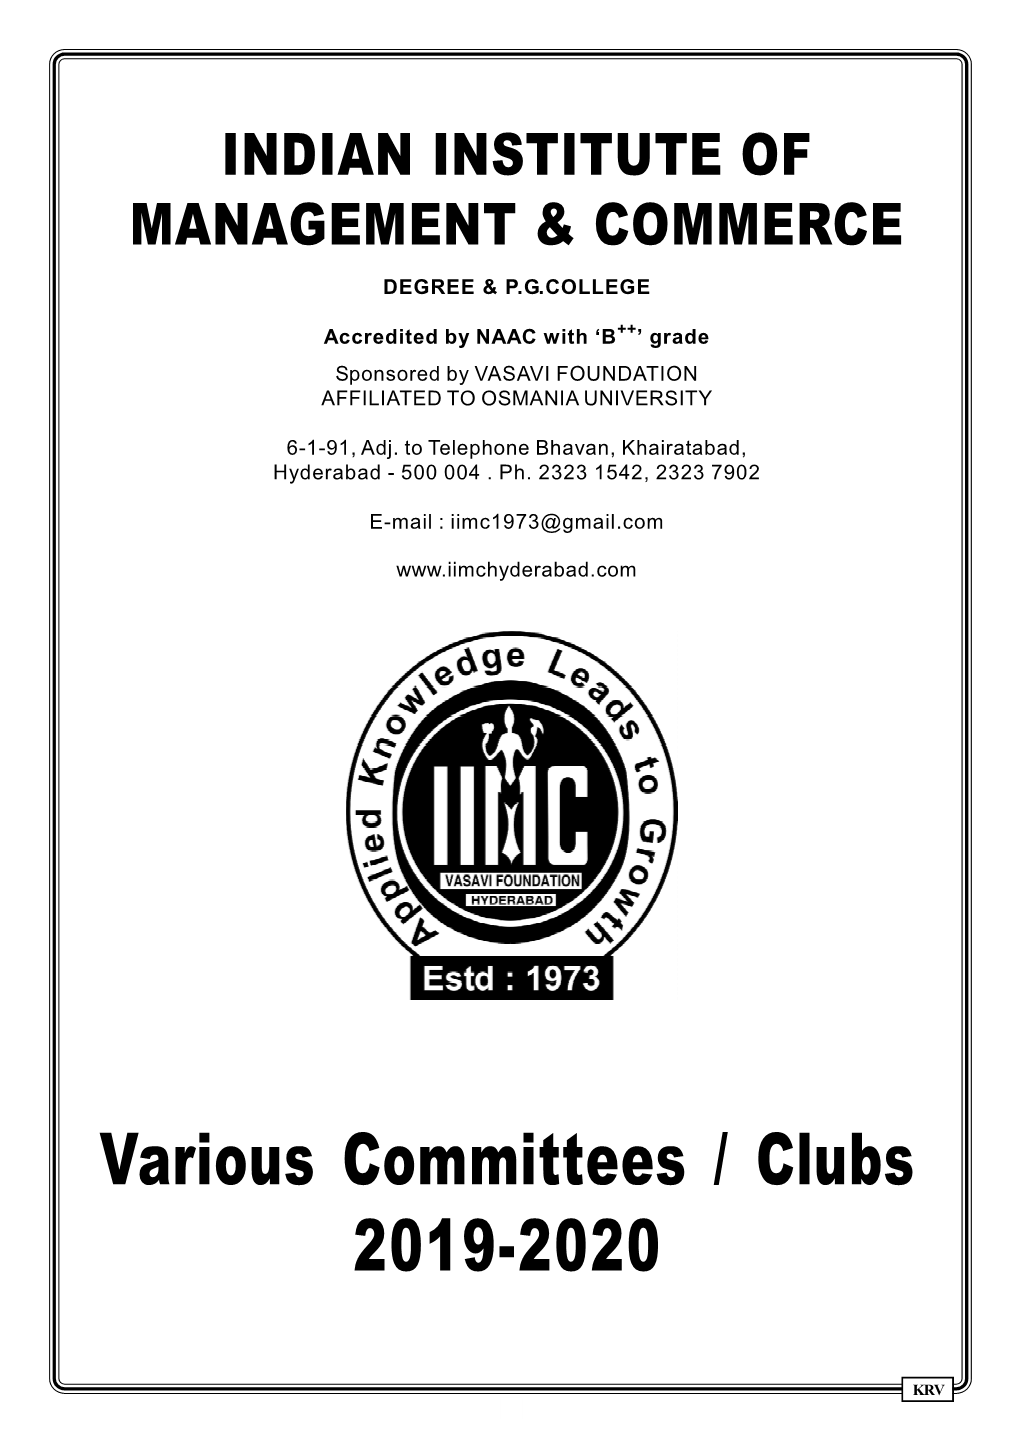 Committees 2019-20